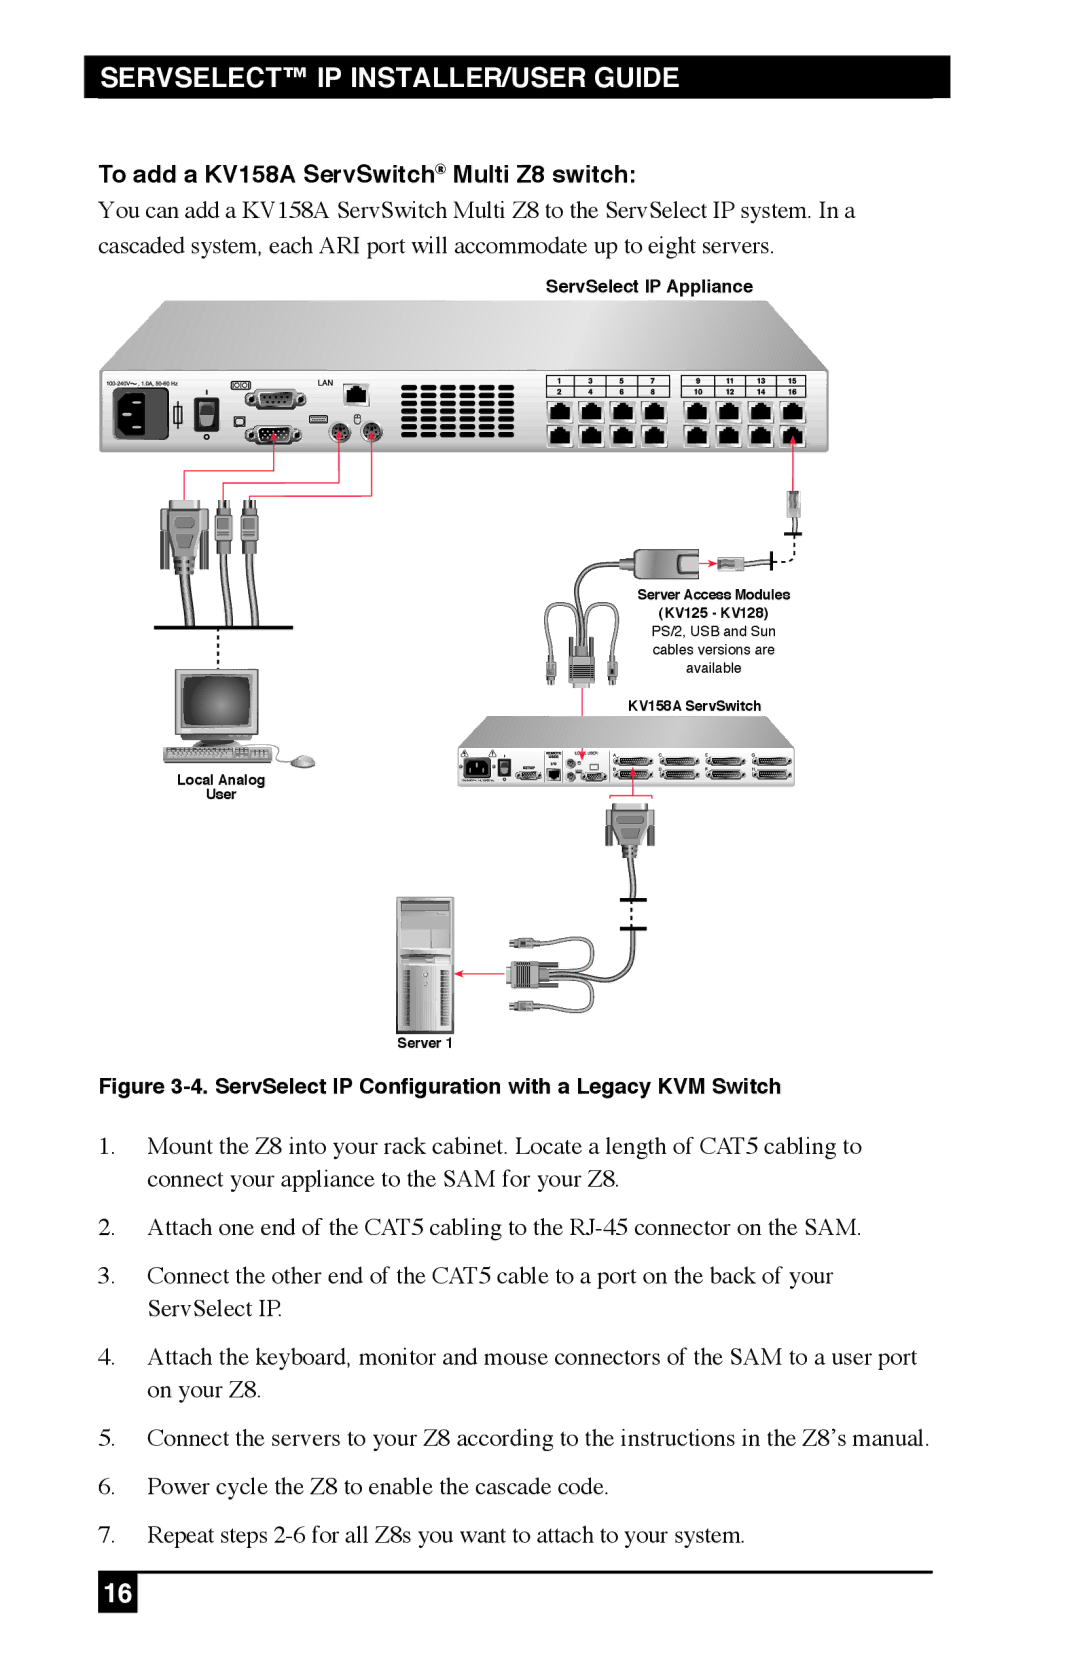 Black Box KV212E, KV120E To add a KV158A ServSwitch Multi Z8 switch, ServSelect IP Configuration with a Legacy KVM Switch 